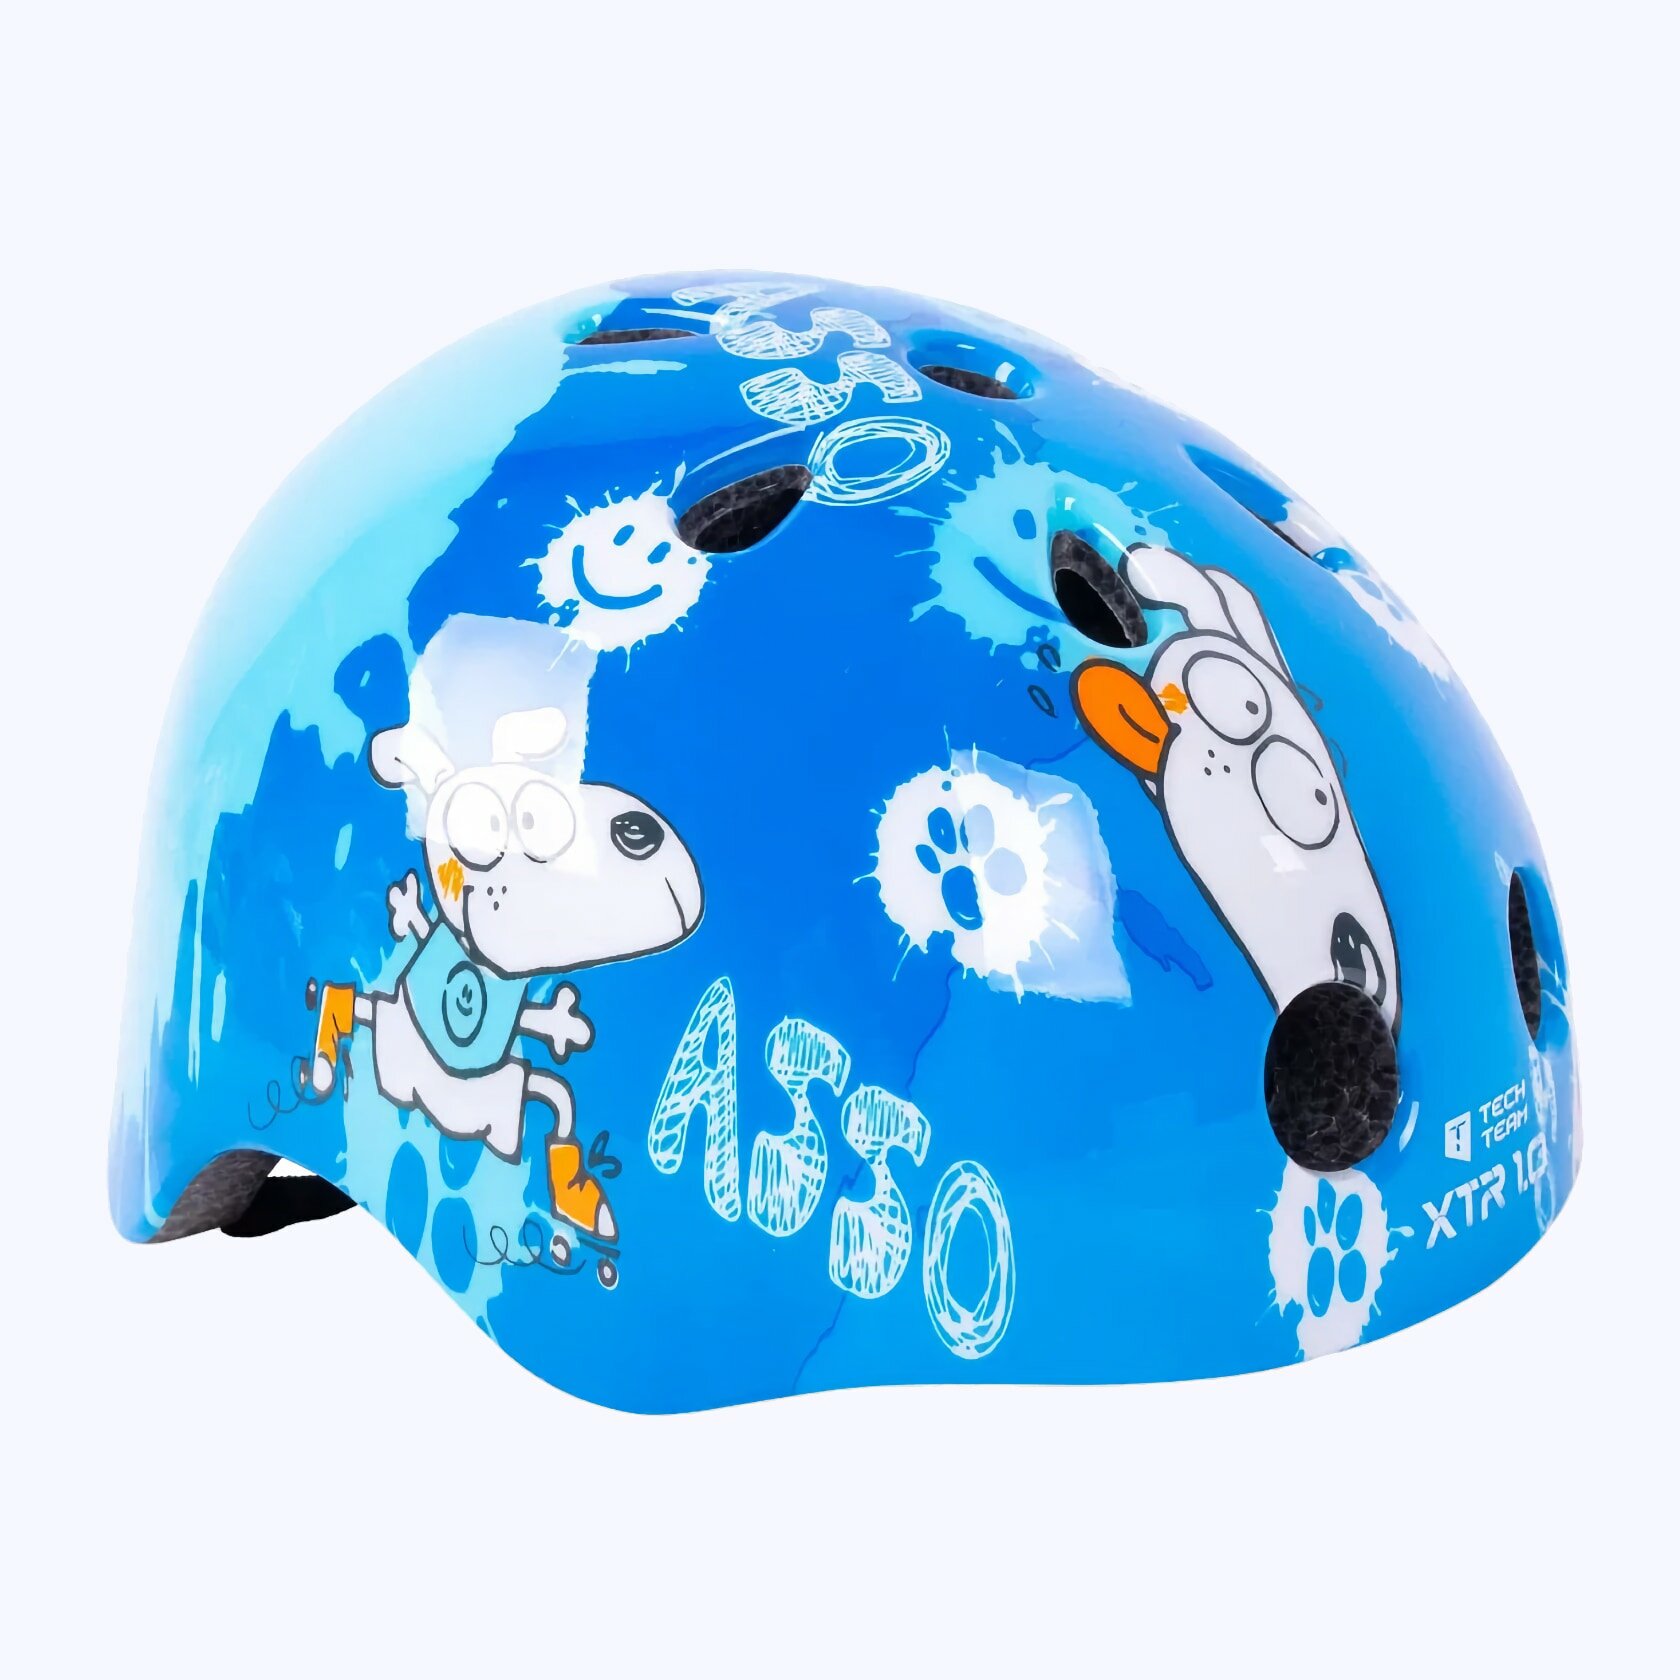 Шлем защитный детский Tech Team XTR 1.0 с подсветкой 48 - 56 - Голубой